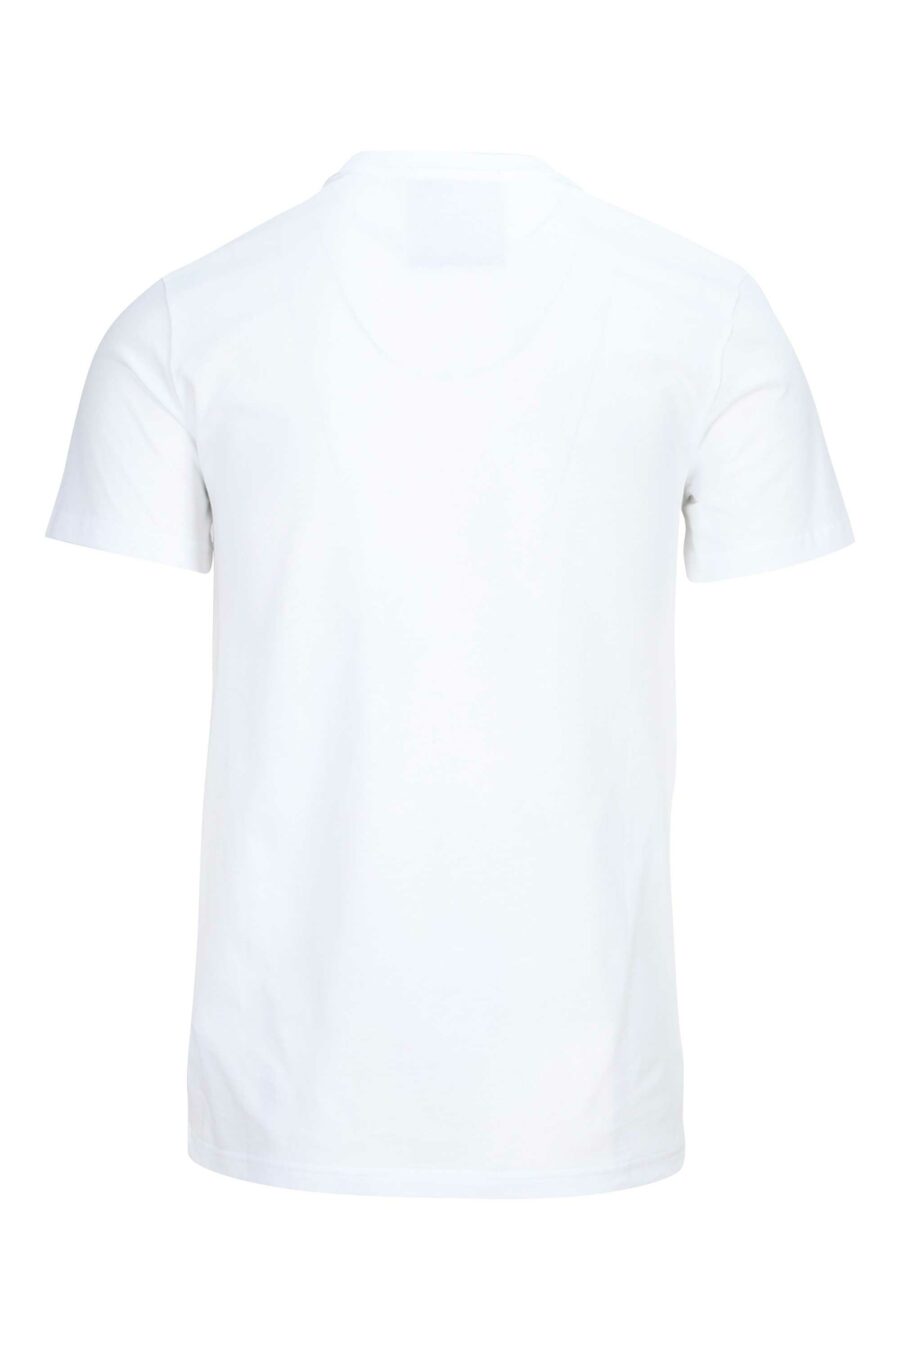 Camiseta blanca de algodón orgánico con maxilogo negro - 889316649031 1